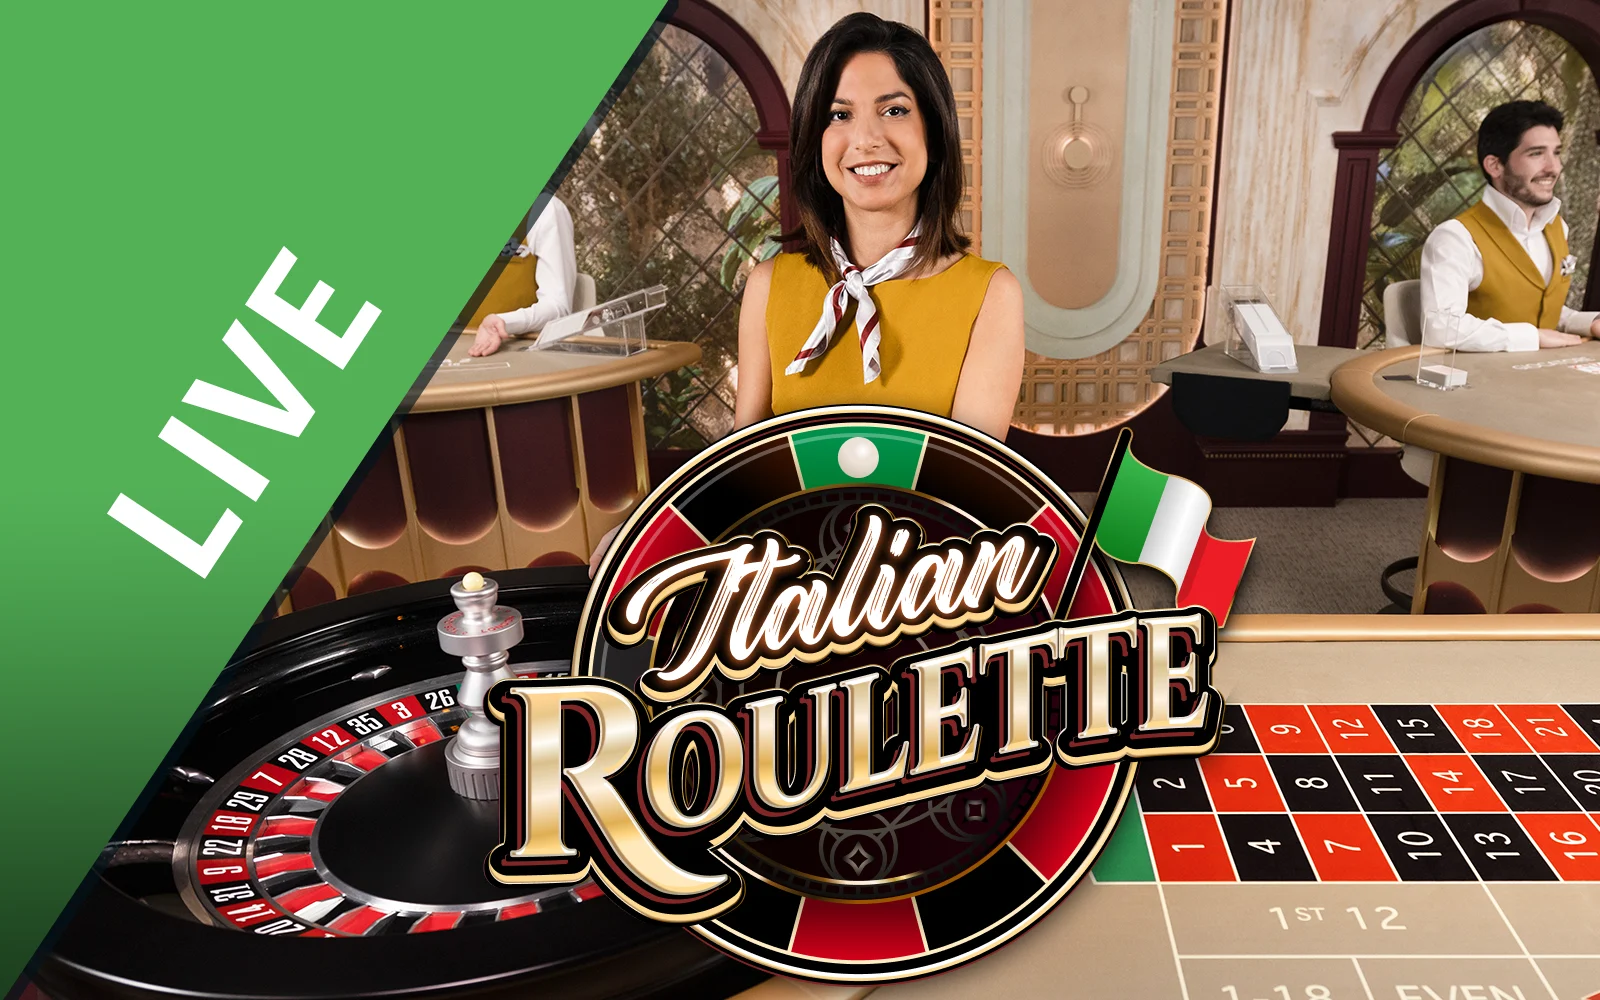 Starcasino.be online casino üzerinden Italian Roulette oynayın